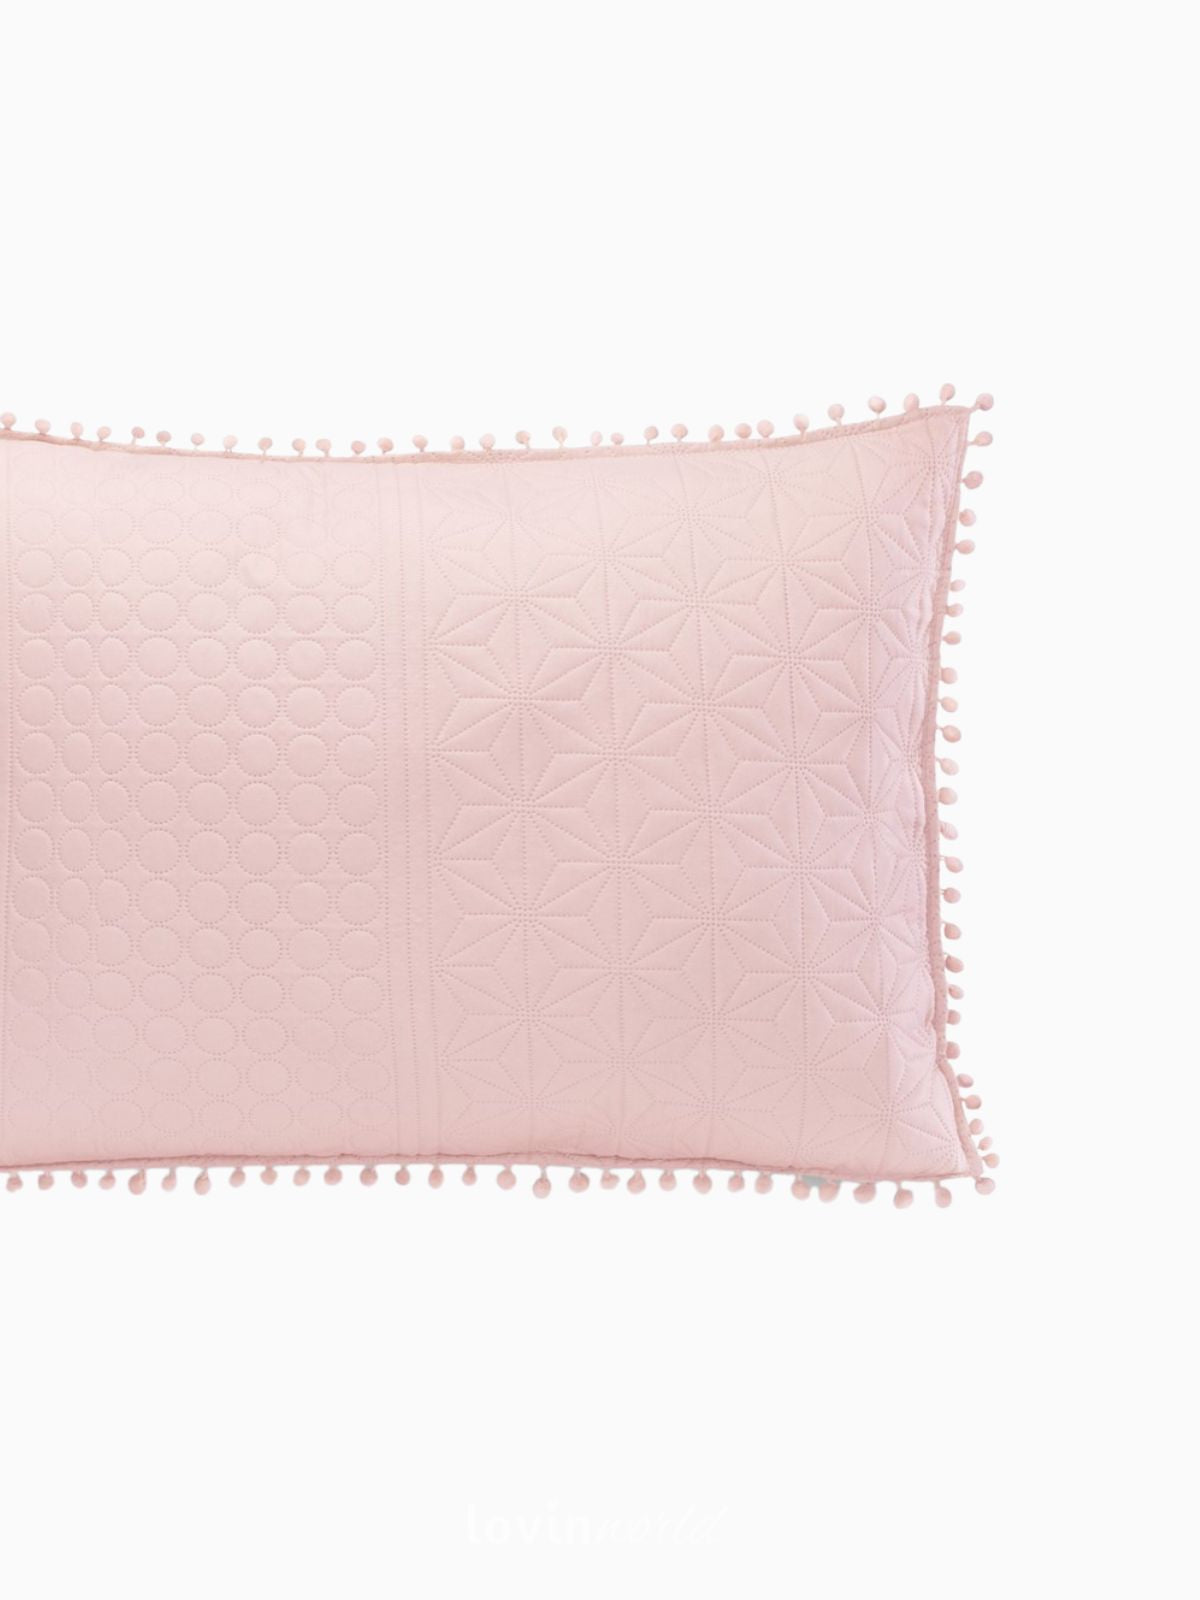 Cuscino decorativo Meadore in colore rosa 50x70 cm.-4